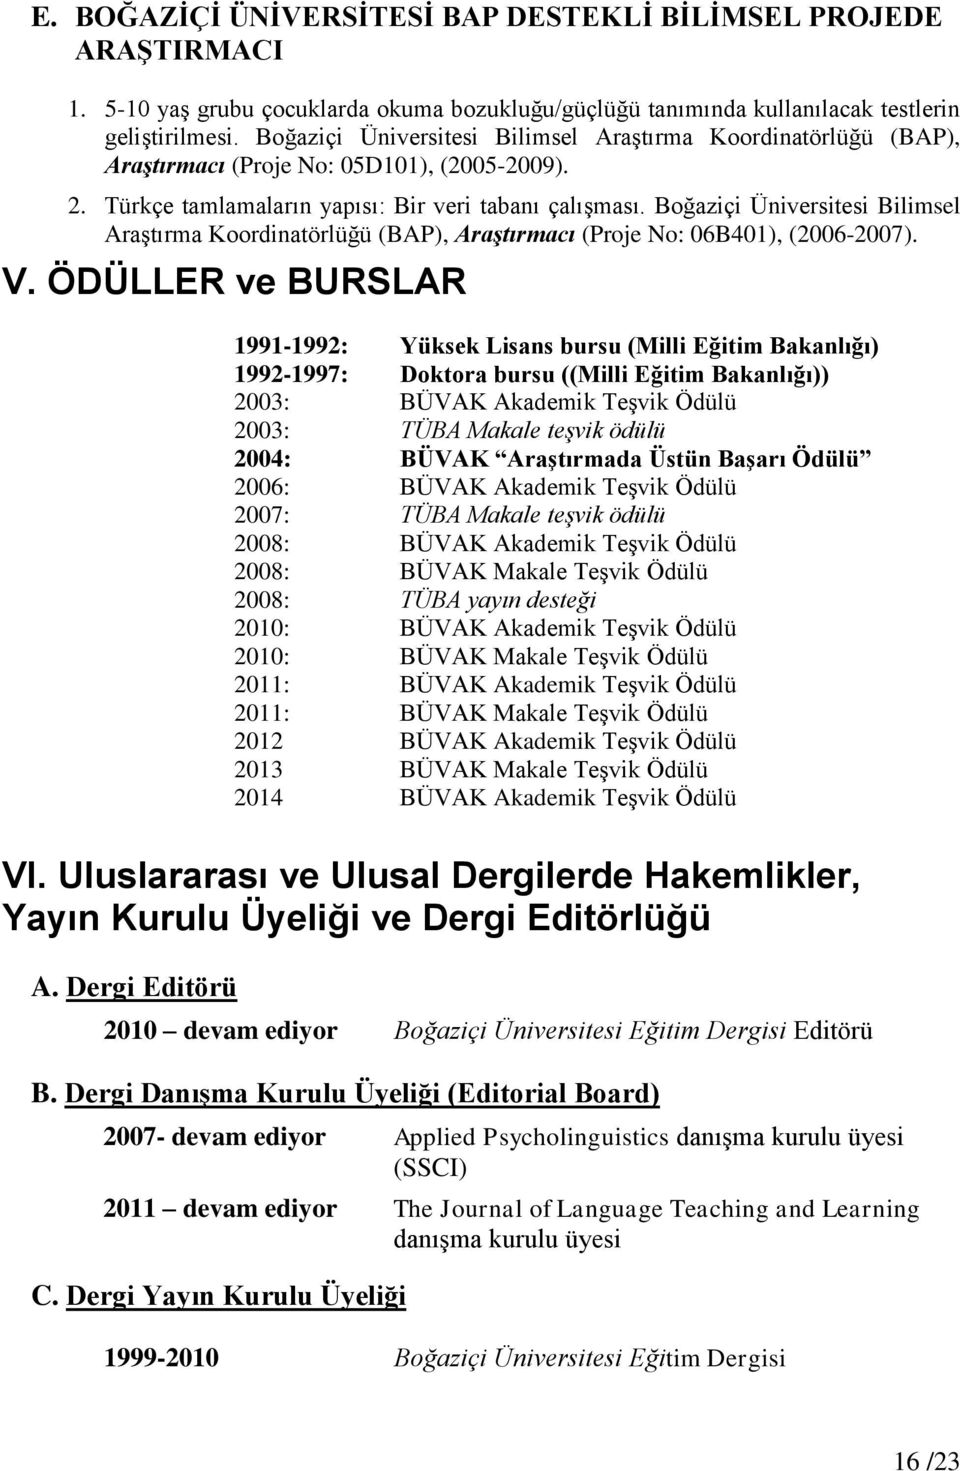 Boğaziçi Üniversitesi Bilimsel Araştırma Koordinatörlüğü (BAP), Araştırmacı (Proje No: 06B401), (2006-2007). V.